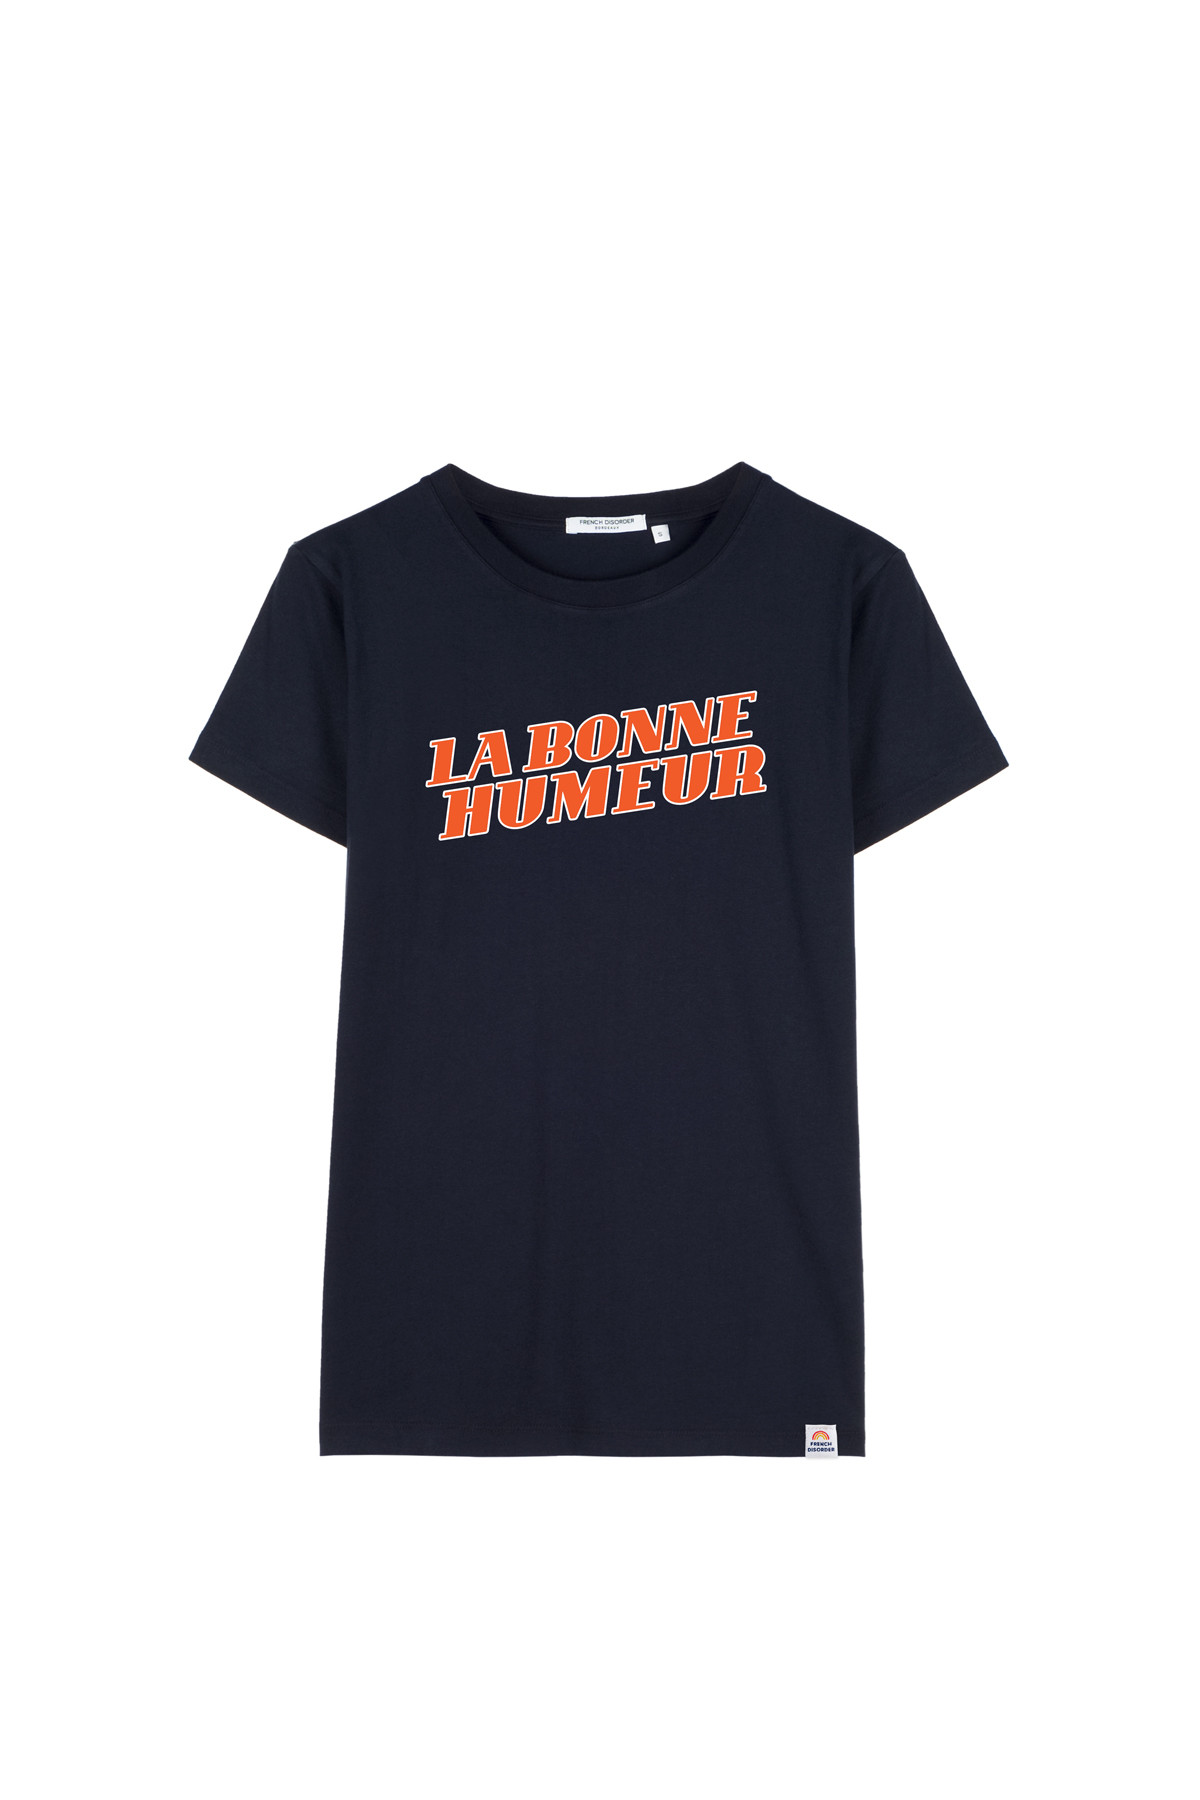 Tshirt LA BONNE HUMEUR French Disorder